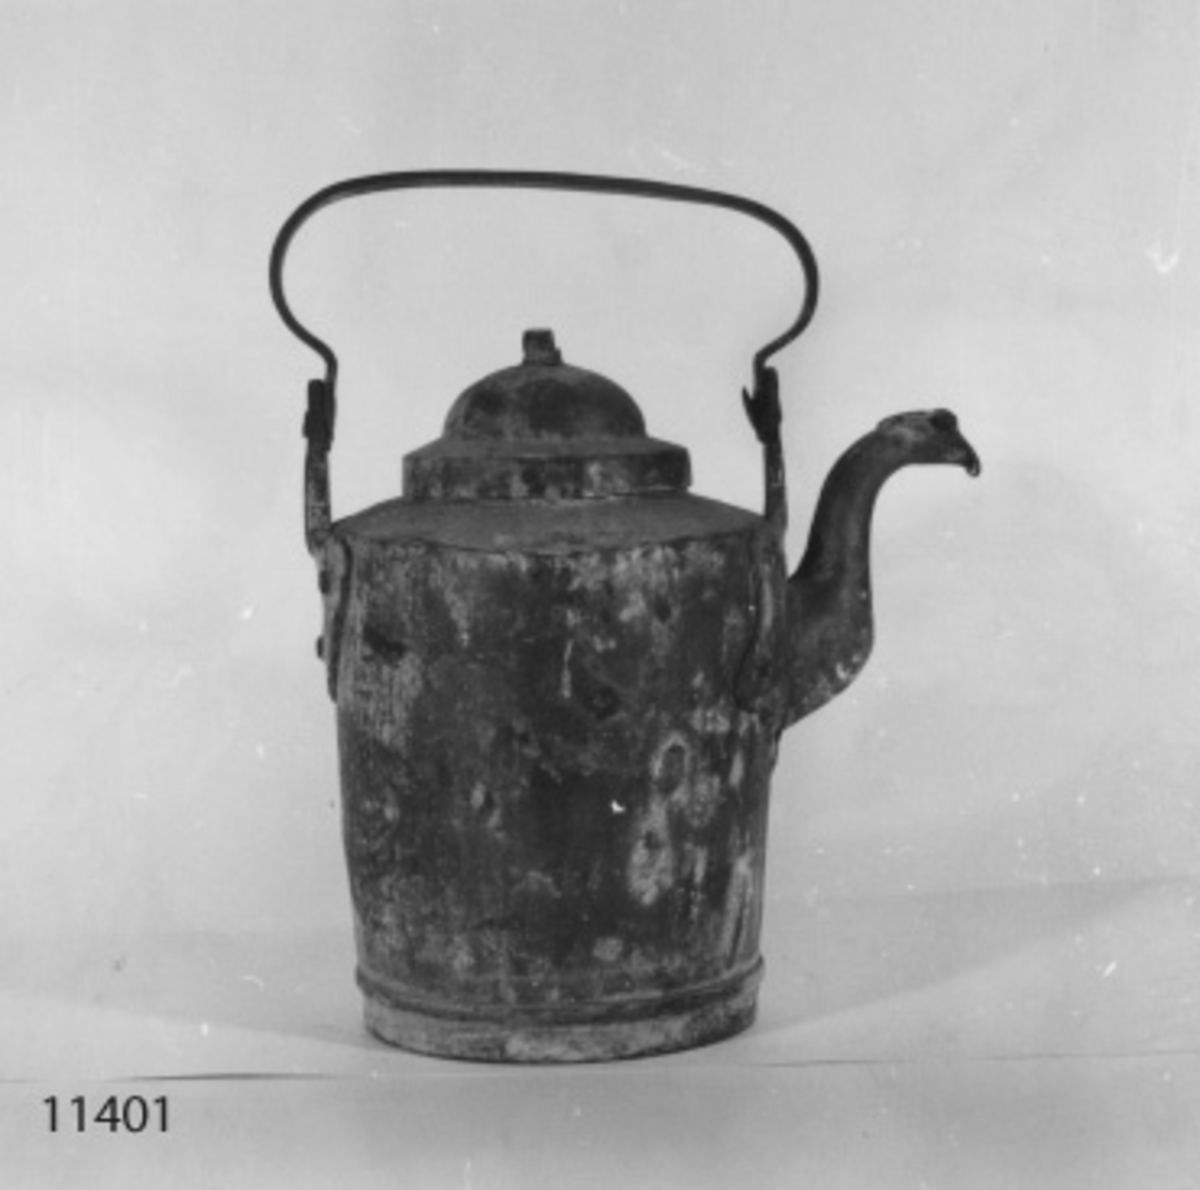 Kaffekittel av koppar. Försedd med lock, handtag och pip. Märkning på handtaget: "Wasa" och "Balder". Från slutet av 1800-talet.